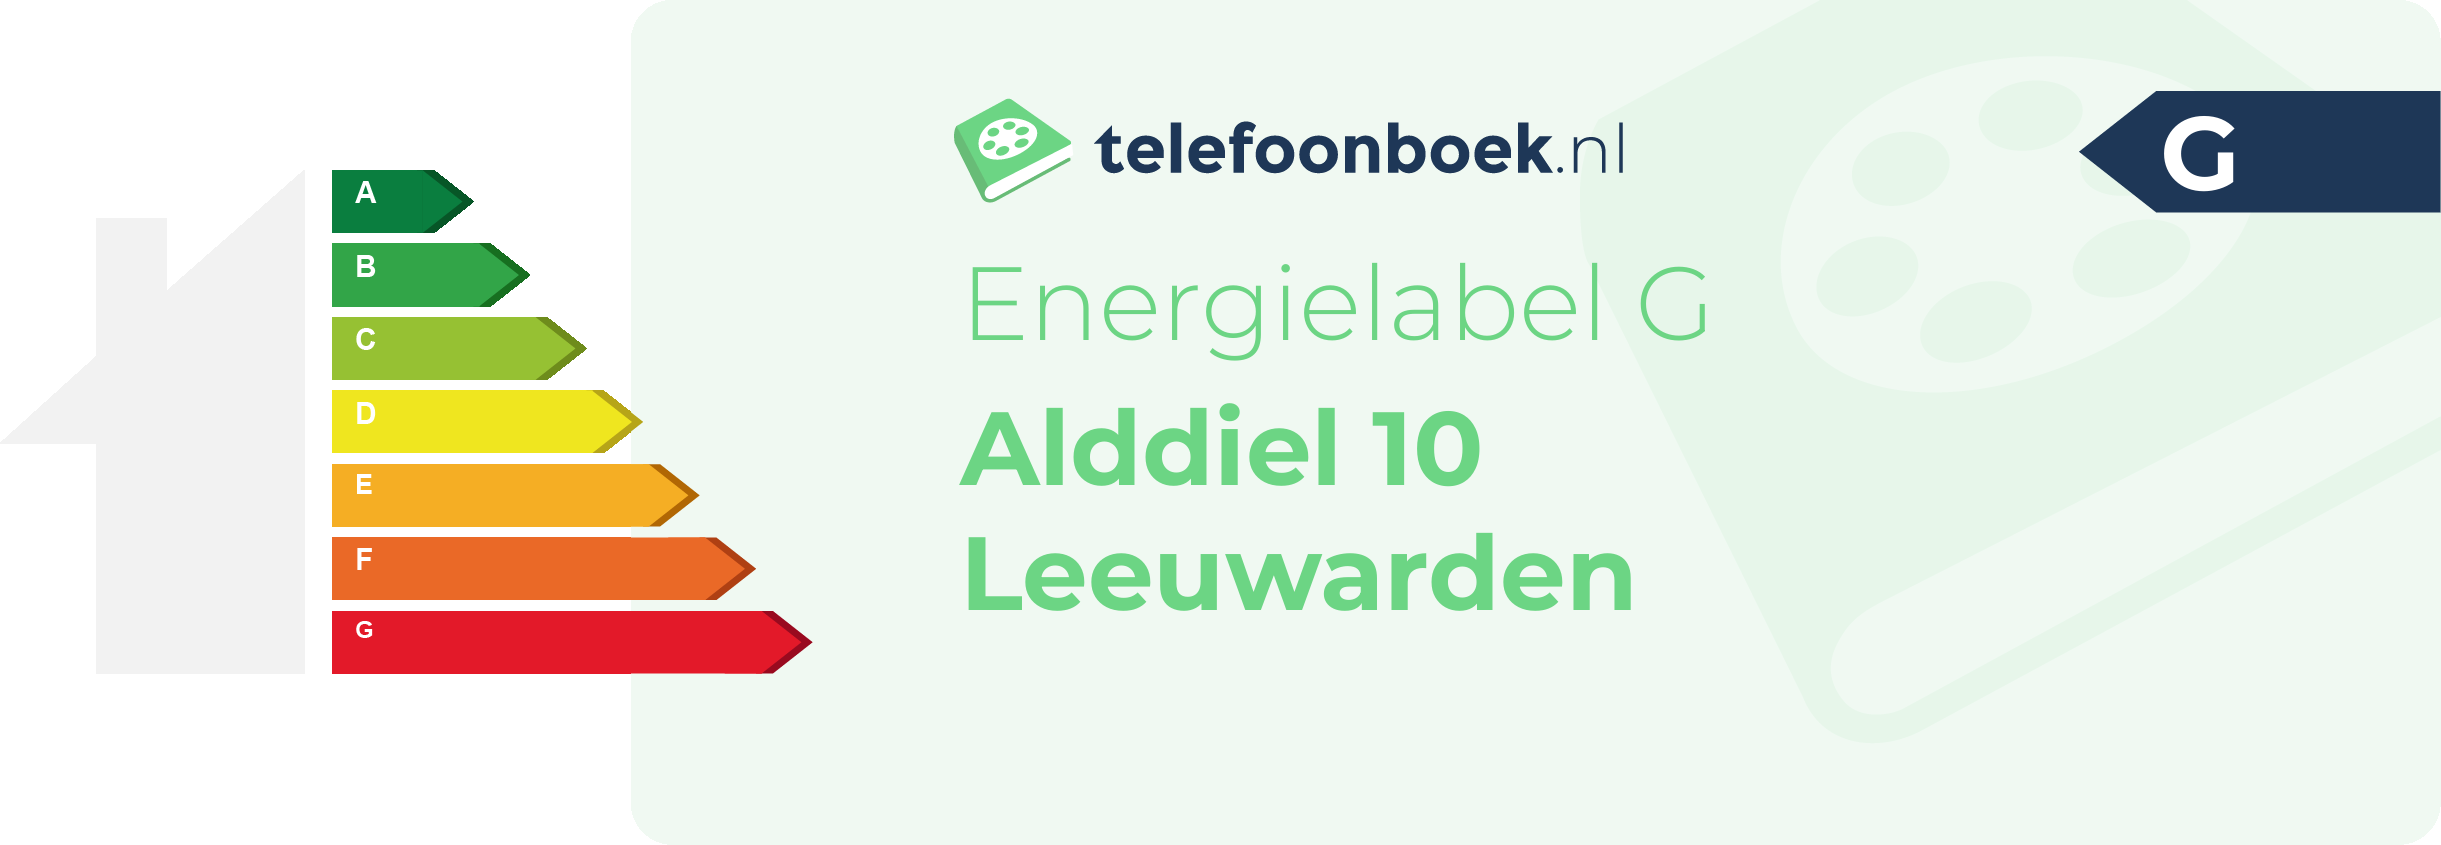 Energielabel Alddiel 10 Leeuwarden